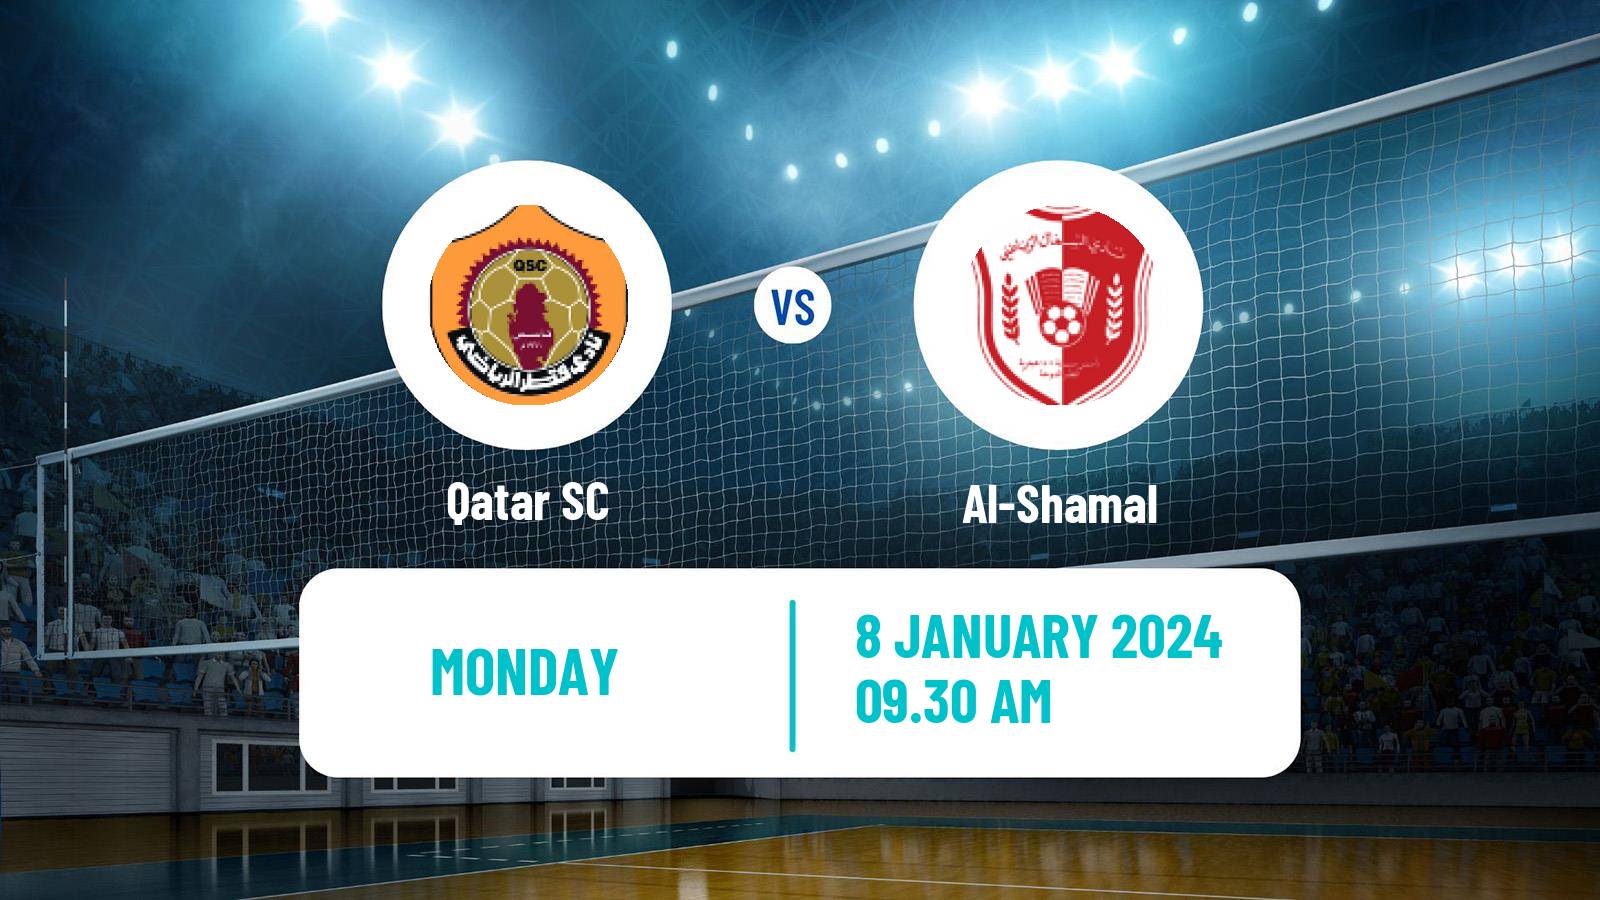 Volleyball Qatar Volleyball League Qatar SC - Al-Shamal